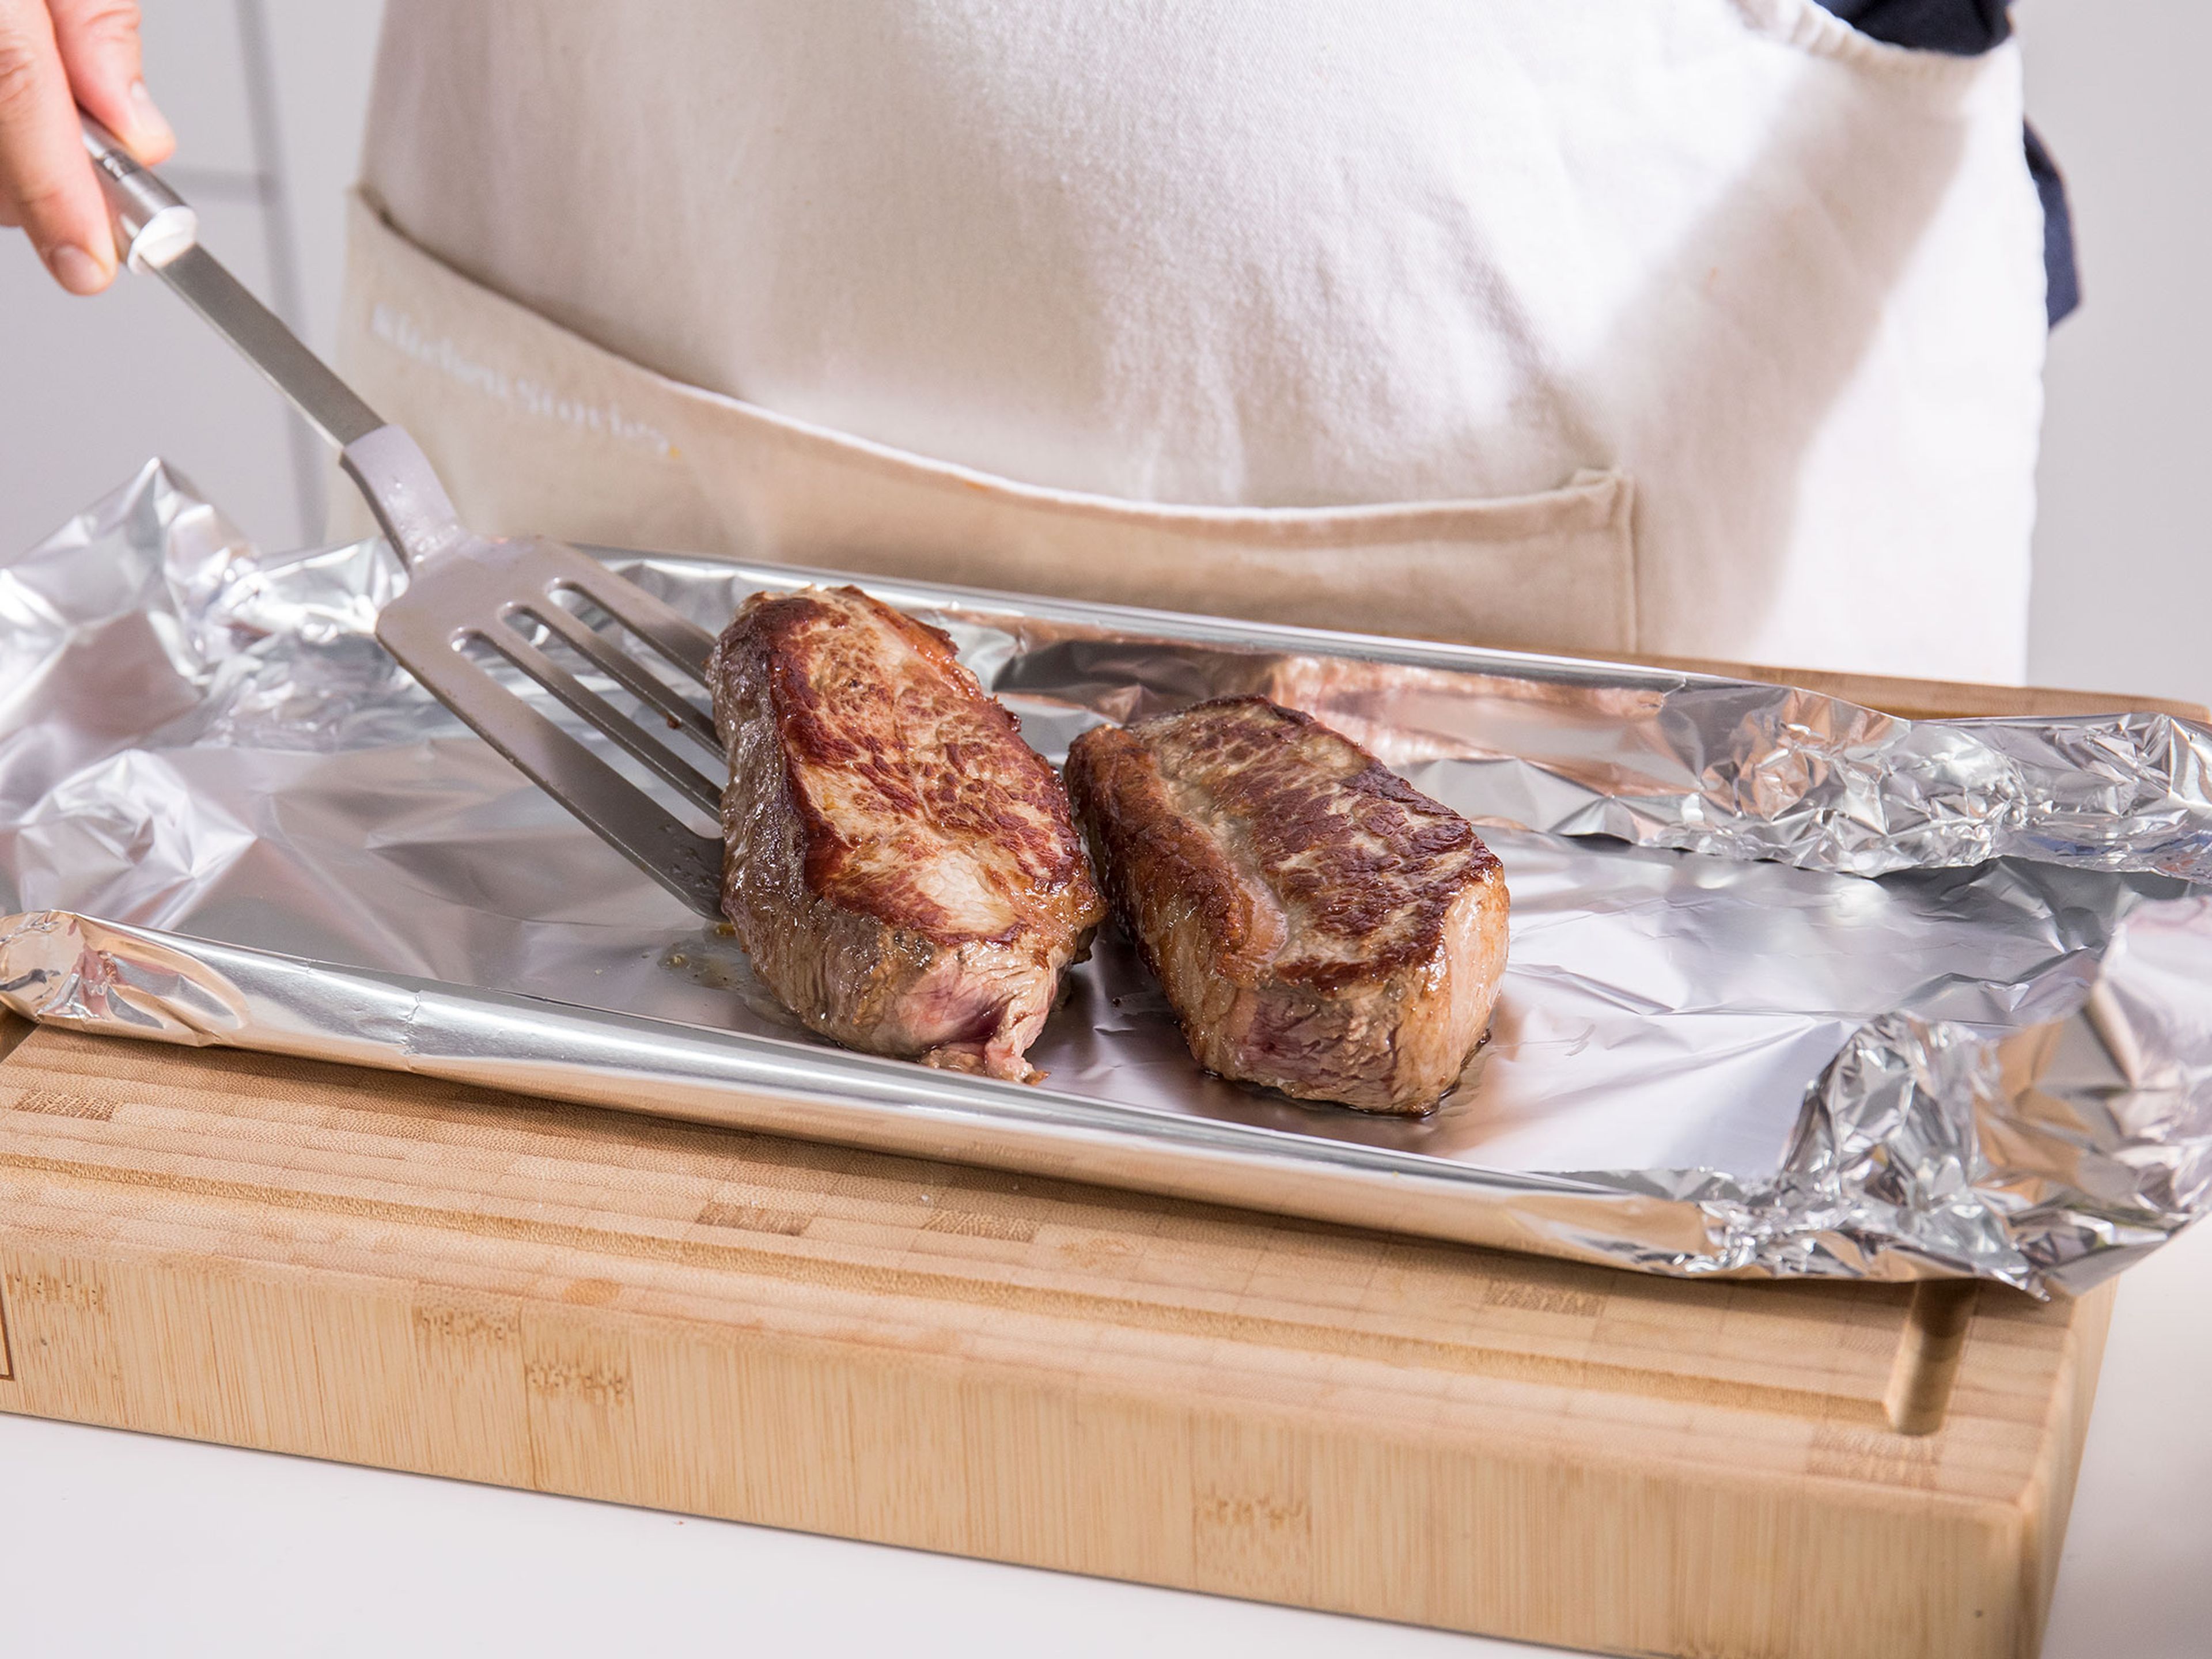 Für das Fleisch, den Fettrand der Steaks in regelmäßigen Abständen einschneiden. Eine Pfanne bei mittlerer bis hoher Temperatur erhitzen. Das Fleisch salzen und scharf anbraten. Mit Pfeffer würzen und jedes Steak in Aluminiumfolie einpacken. Für ca. 3 Min. ruhen lassen. Die Sauce mit Butter abbinden und mit Salz und Pfeffer würzen. Steaks mit Zwiebelsauce und Kartoffeln servieren. Guten Appetit!